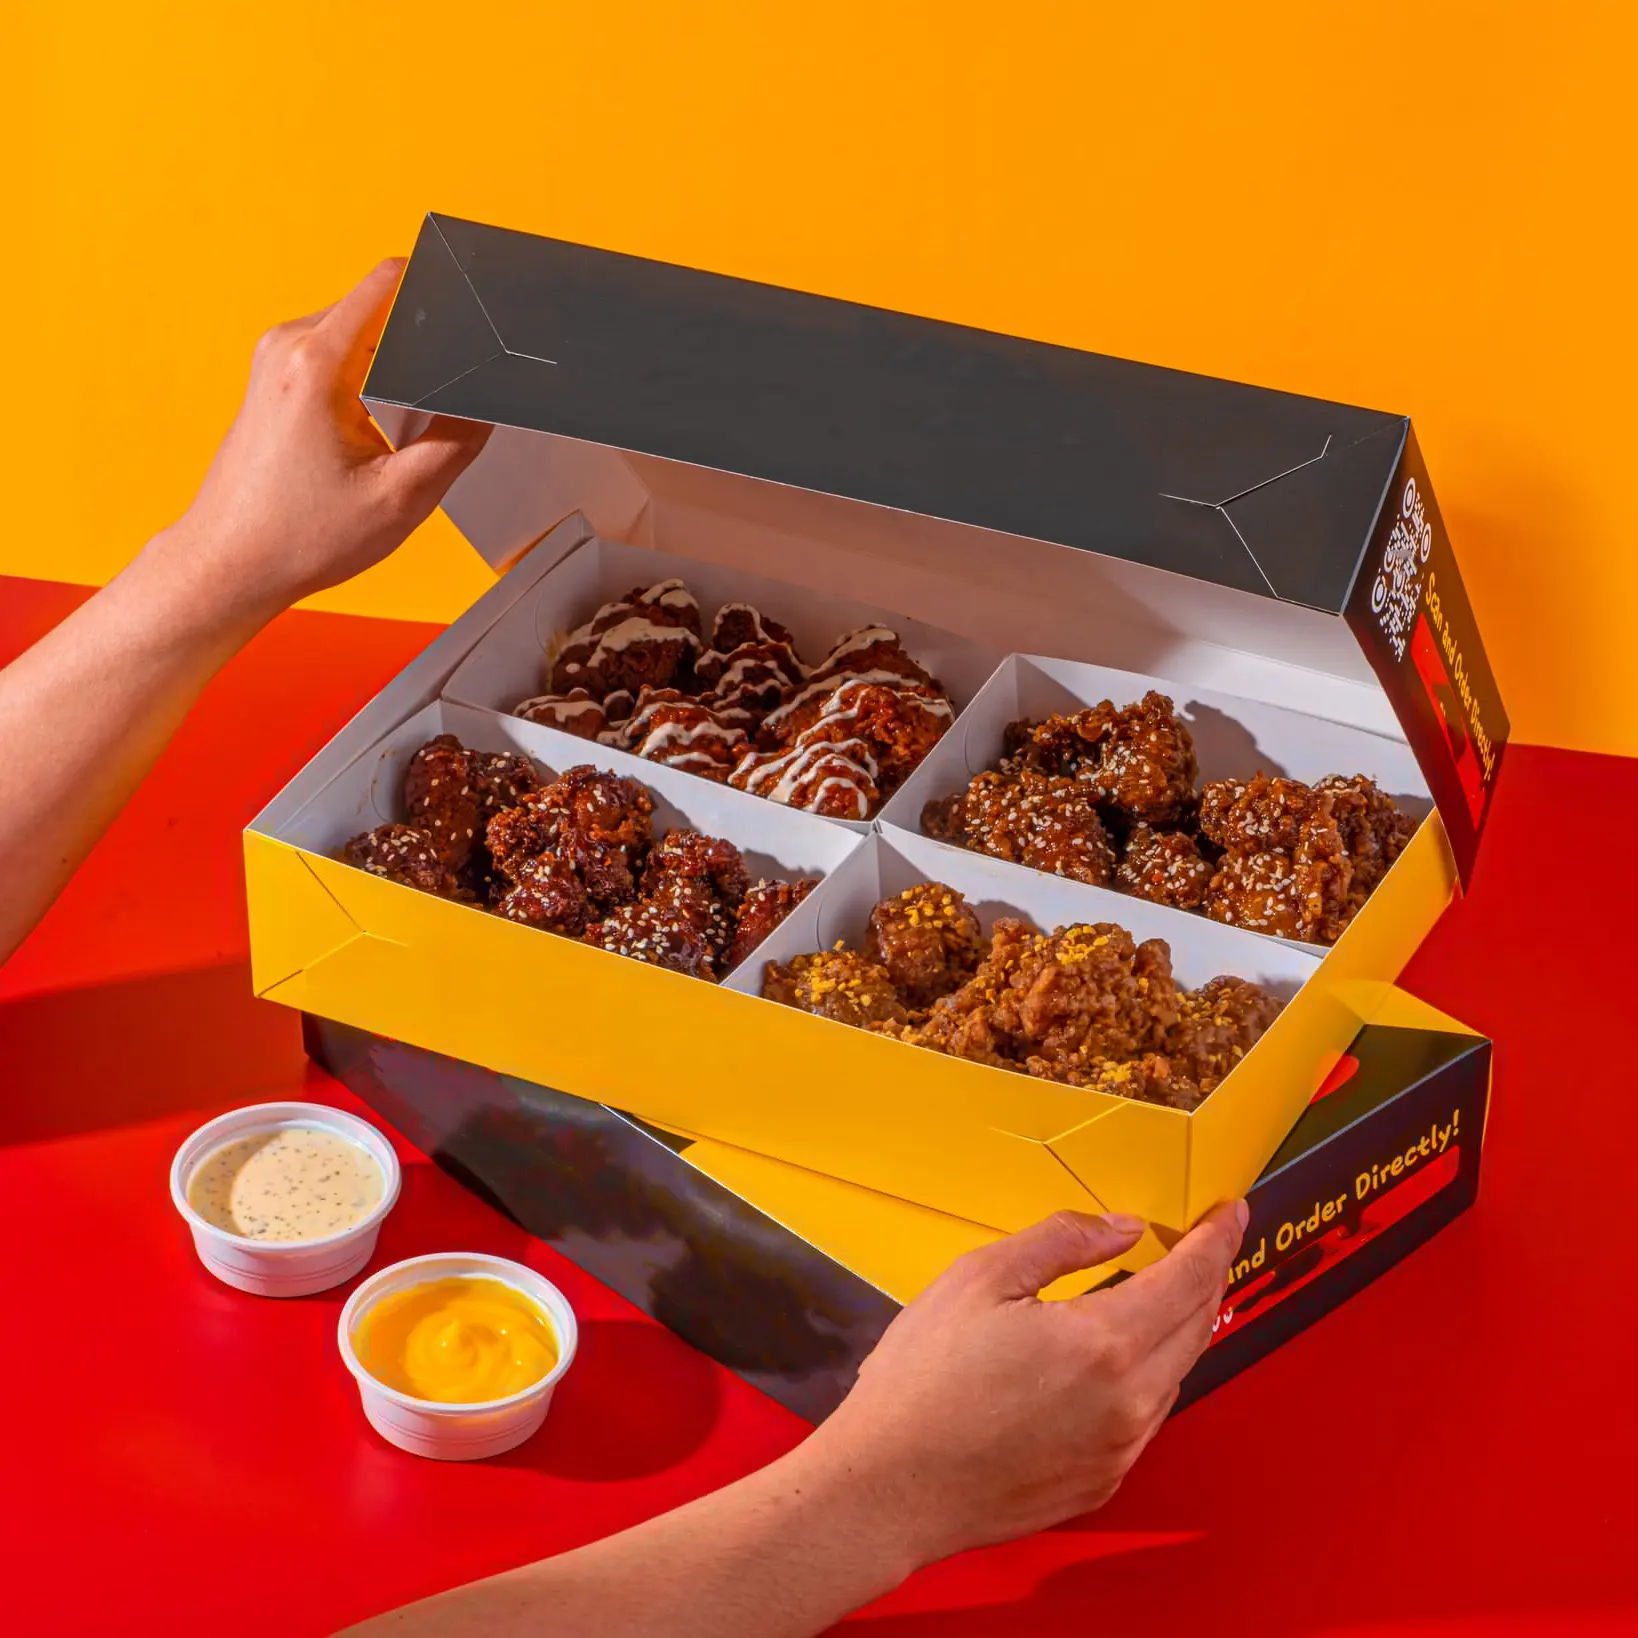 Embalagem de fast food com 4 recipientes de grade para frango frito, caixa ecológica de entrega ecológica, para embalagem de asas de frango frito